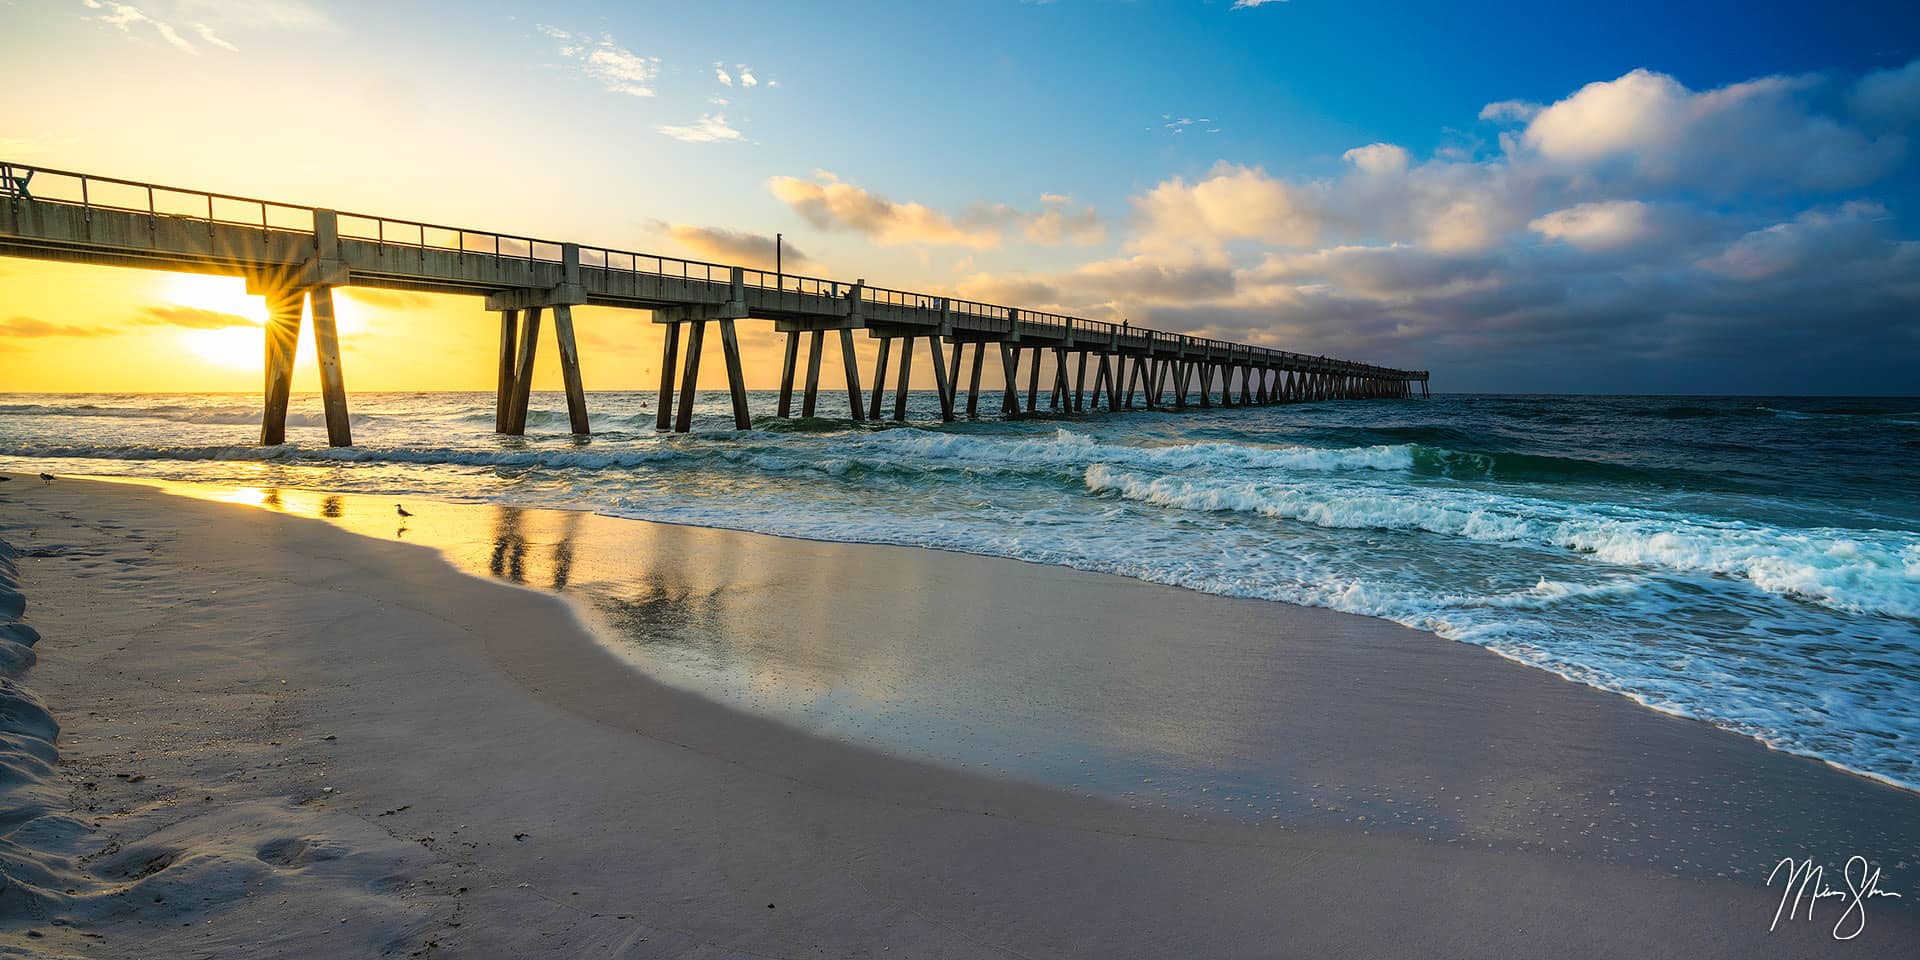 Florida Photography: Beach photography from Destin, Florida